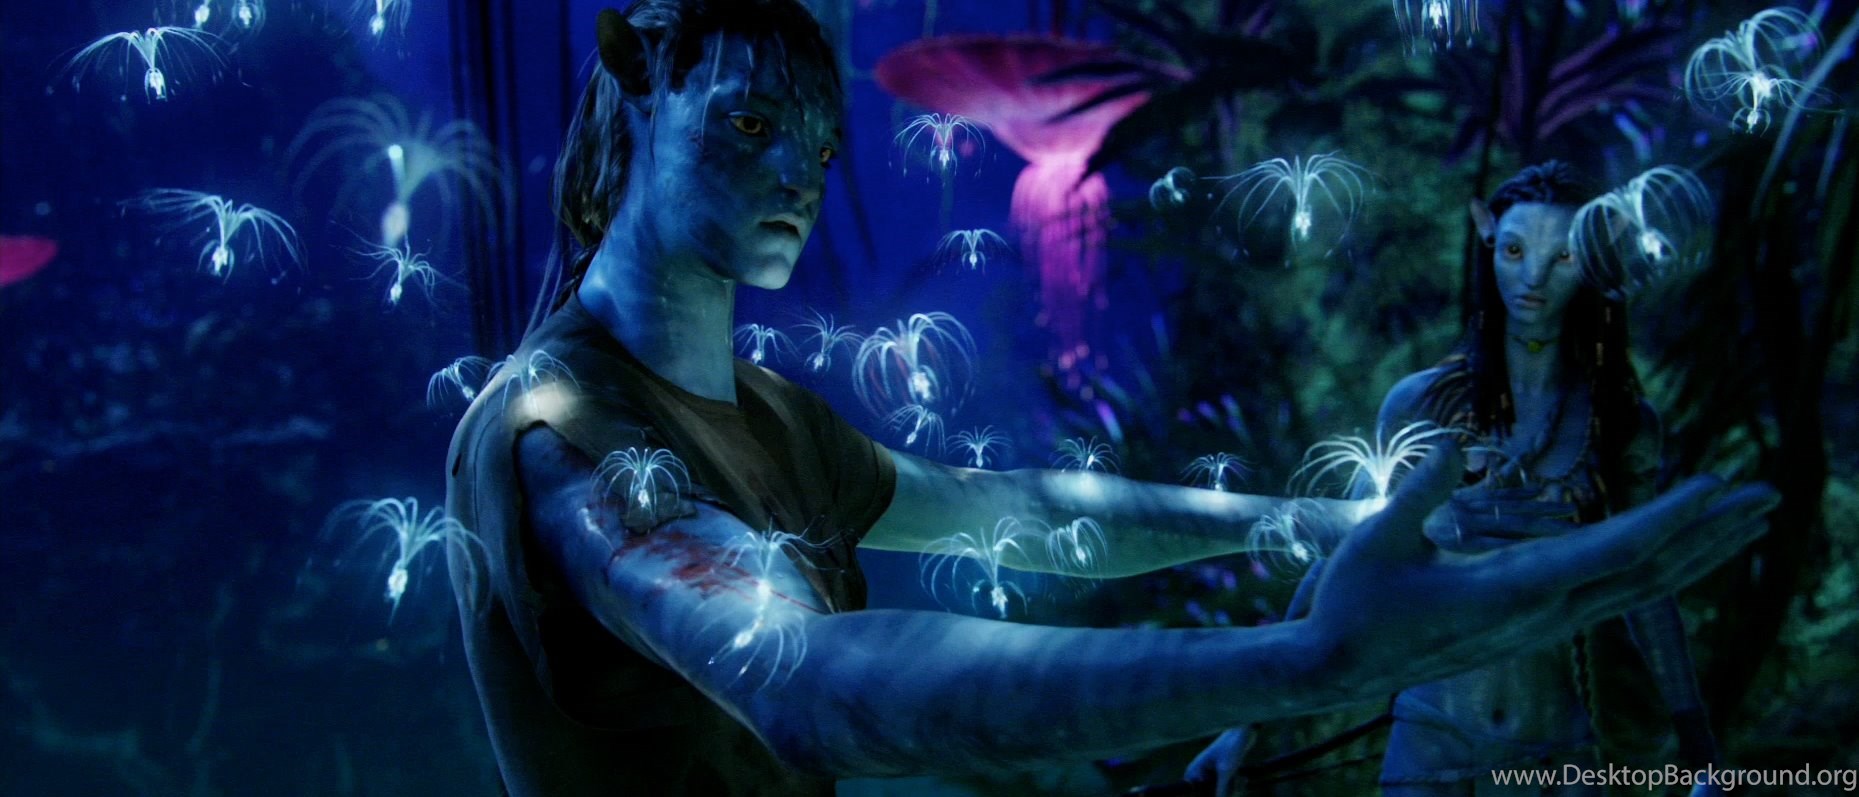 3D Avatar Movie HD Wallpaper Desktop Avatar Cool Image High. Desktop Background